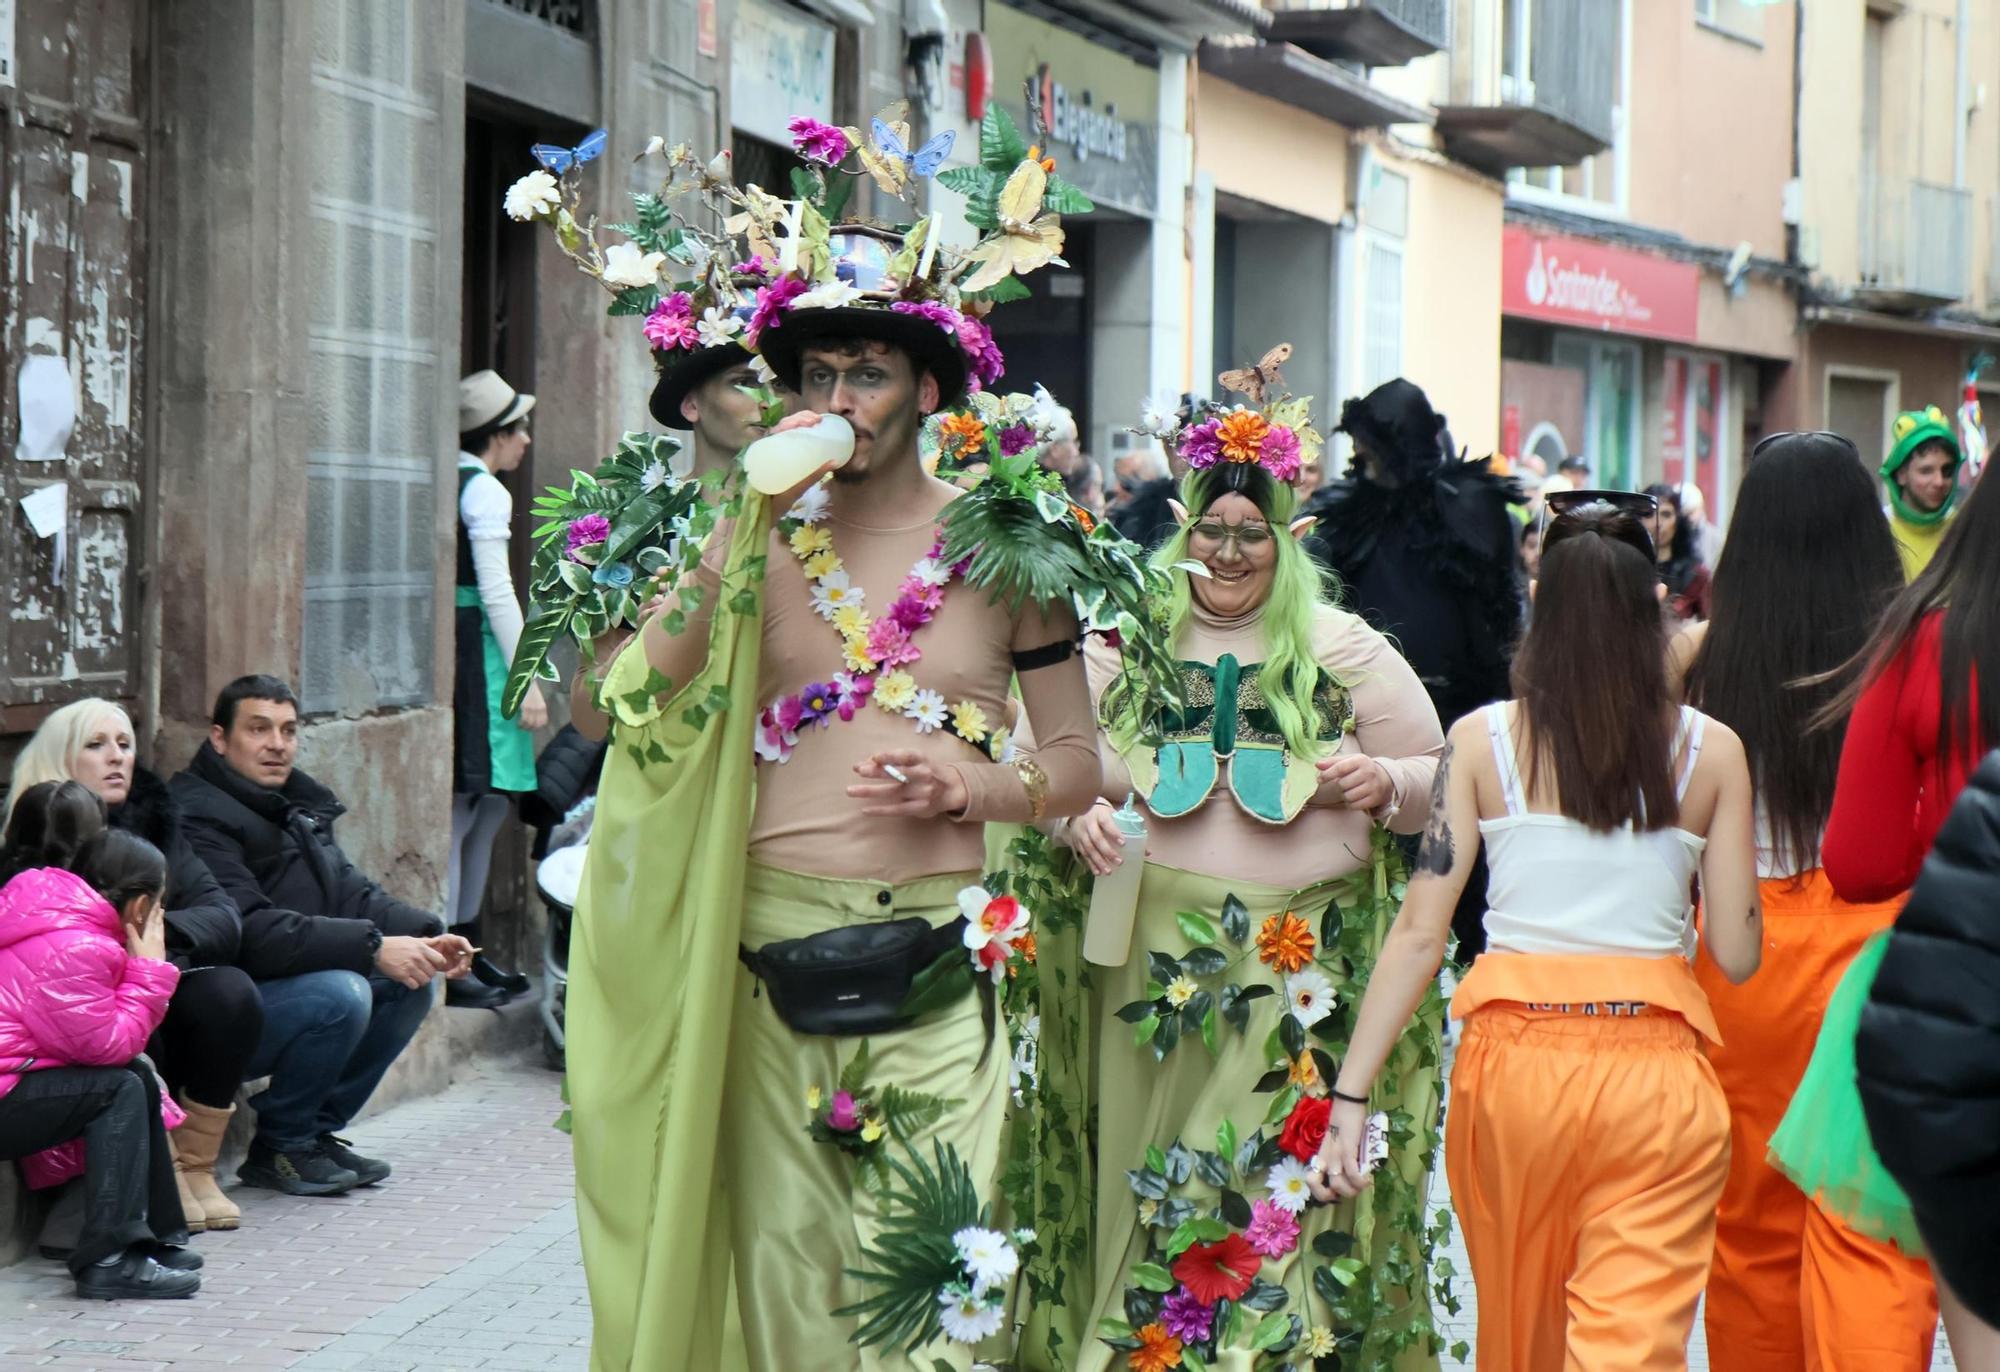 Troba't a les fotos del Carnaval de Sallent